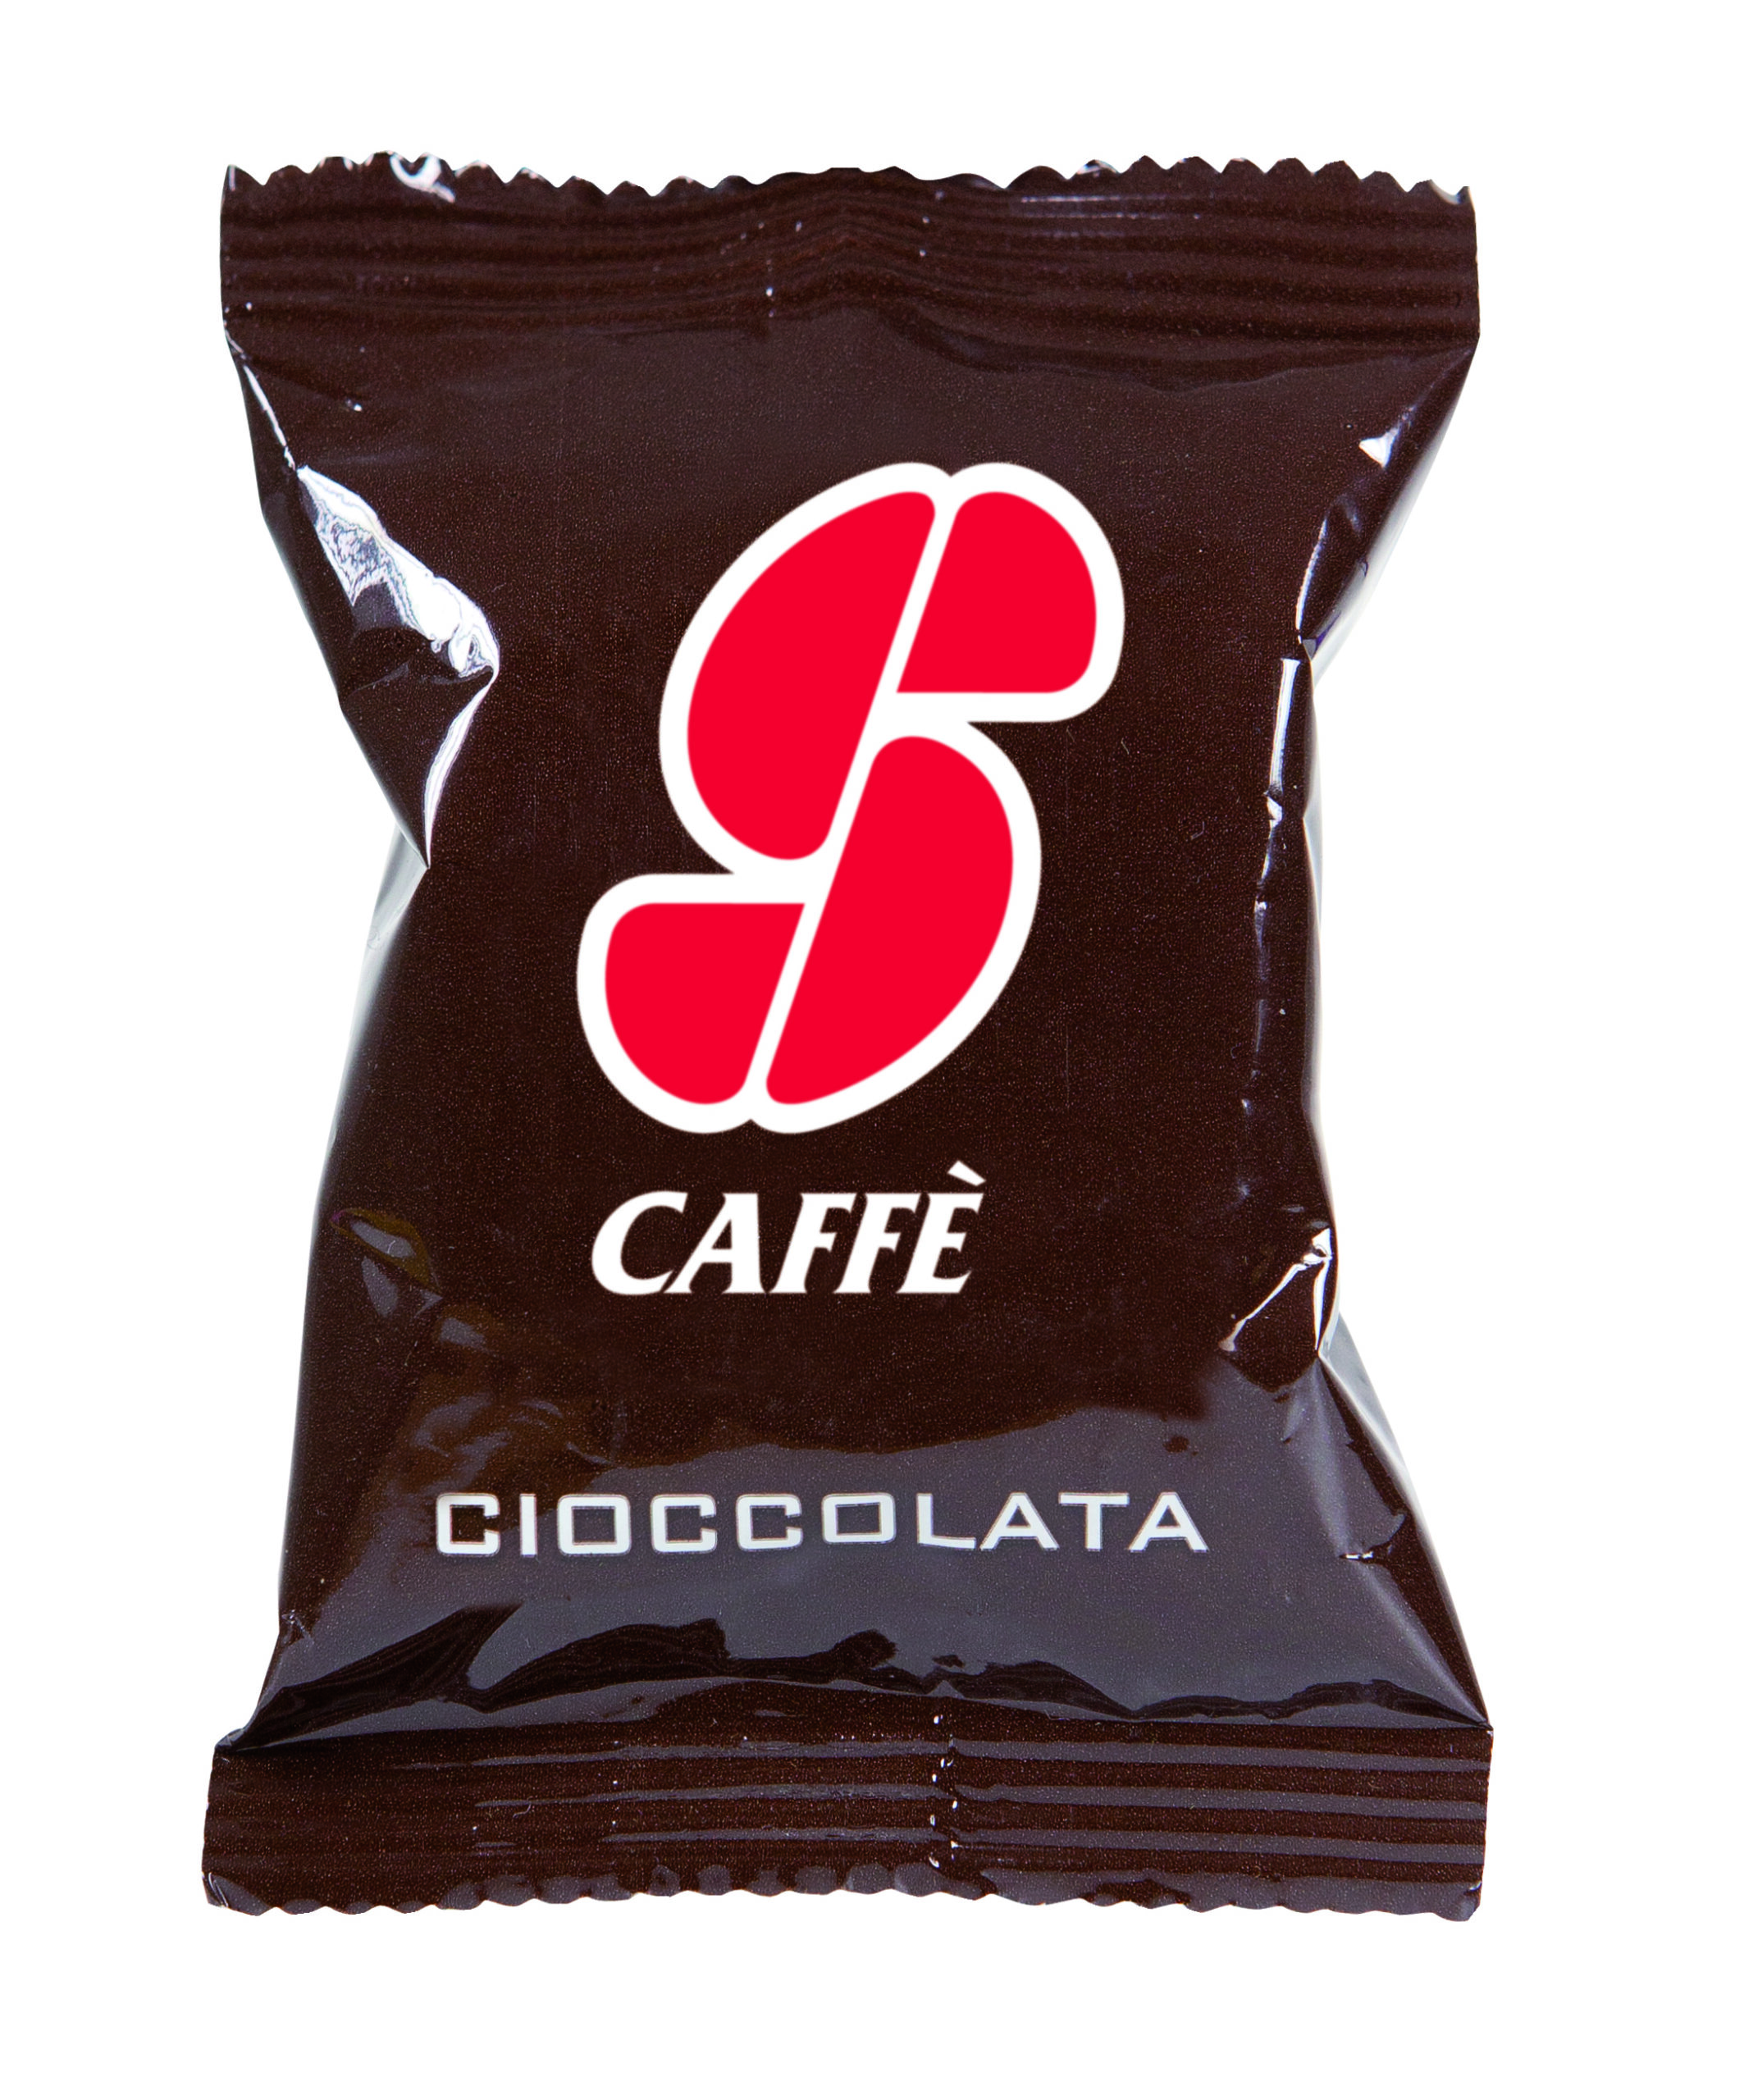 Capsula Cioccolata Essse Caffe 39 Pf2204 79134 a